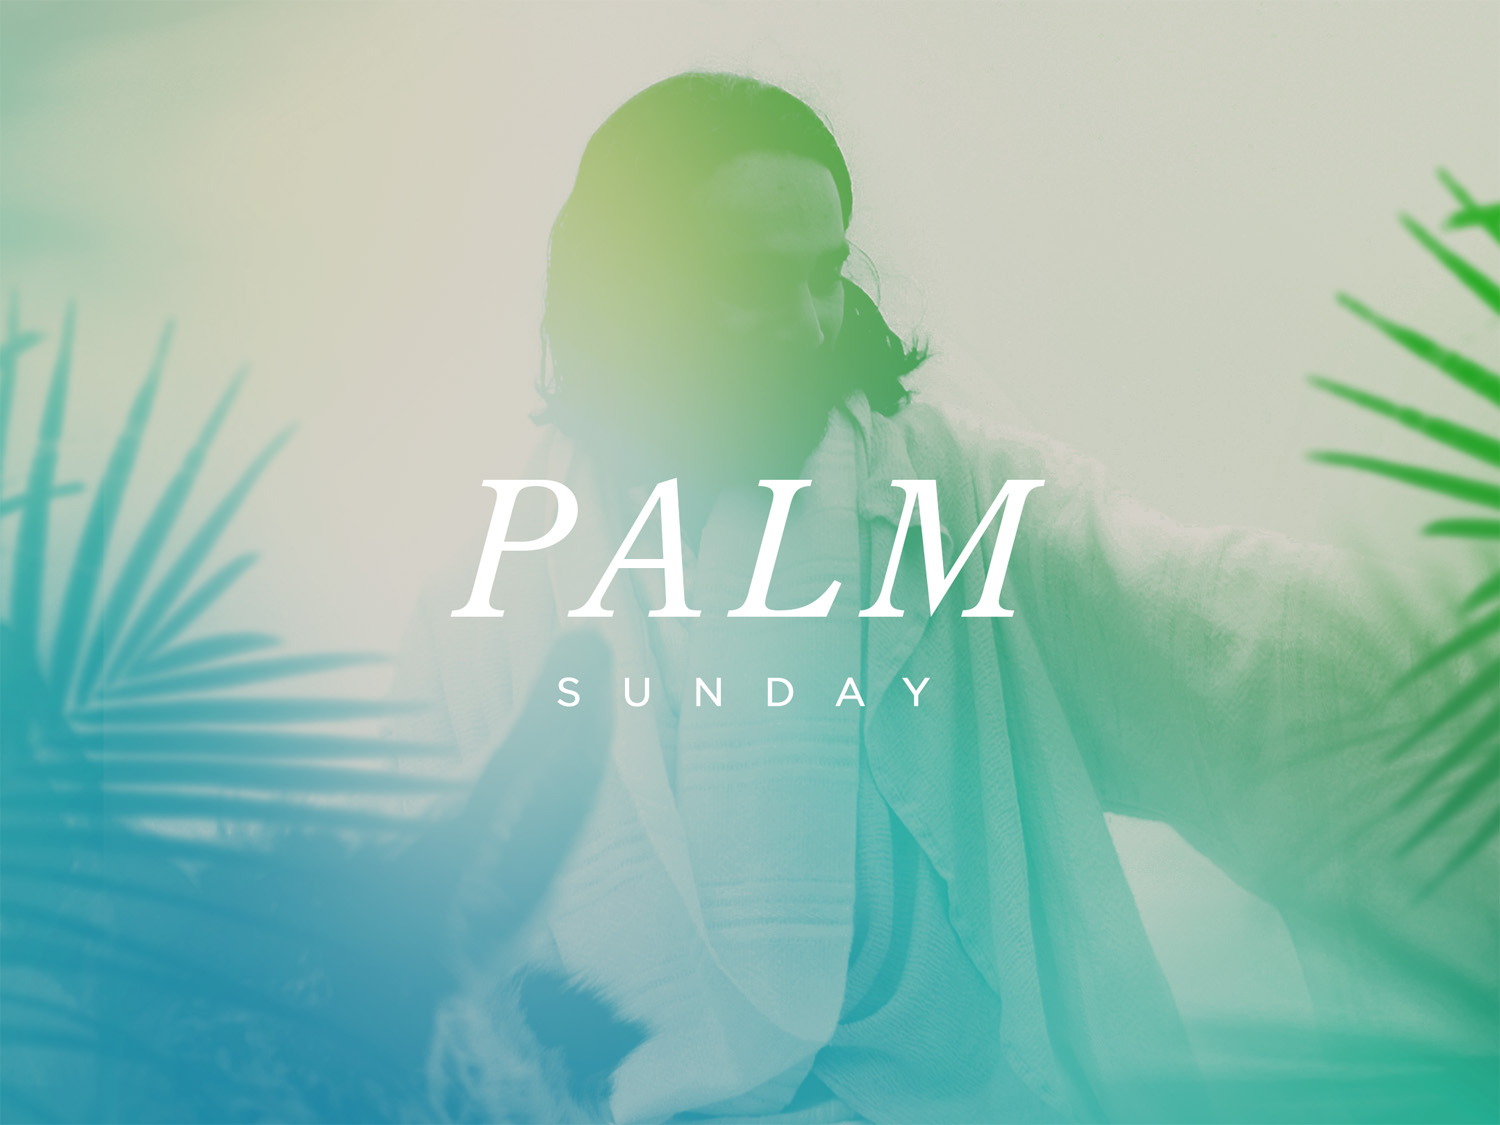 Palm Sunday- "The Unprecedently Holy"